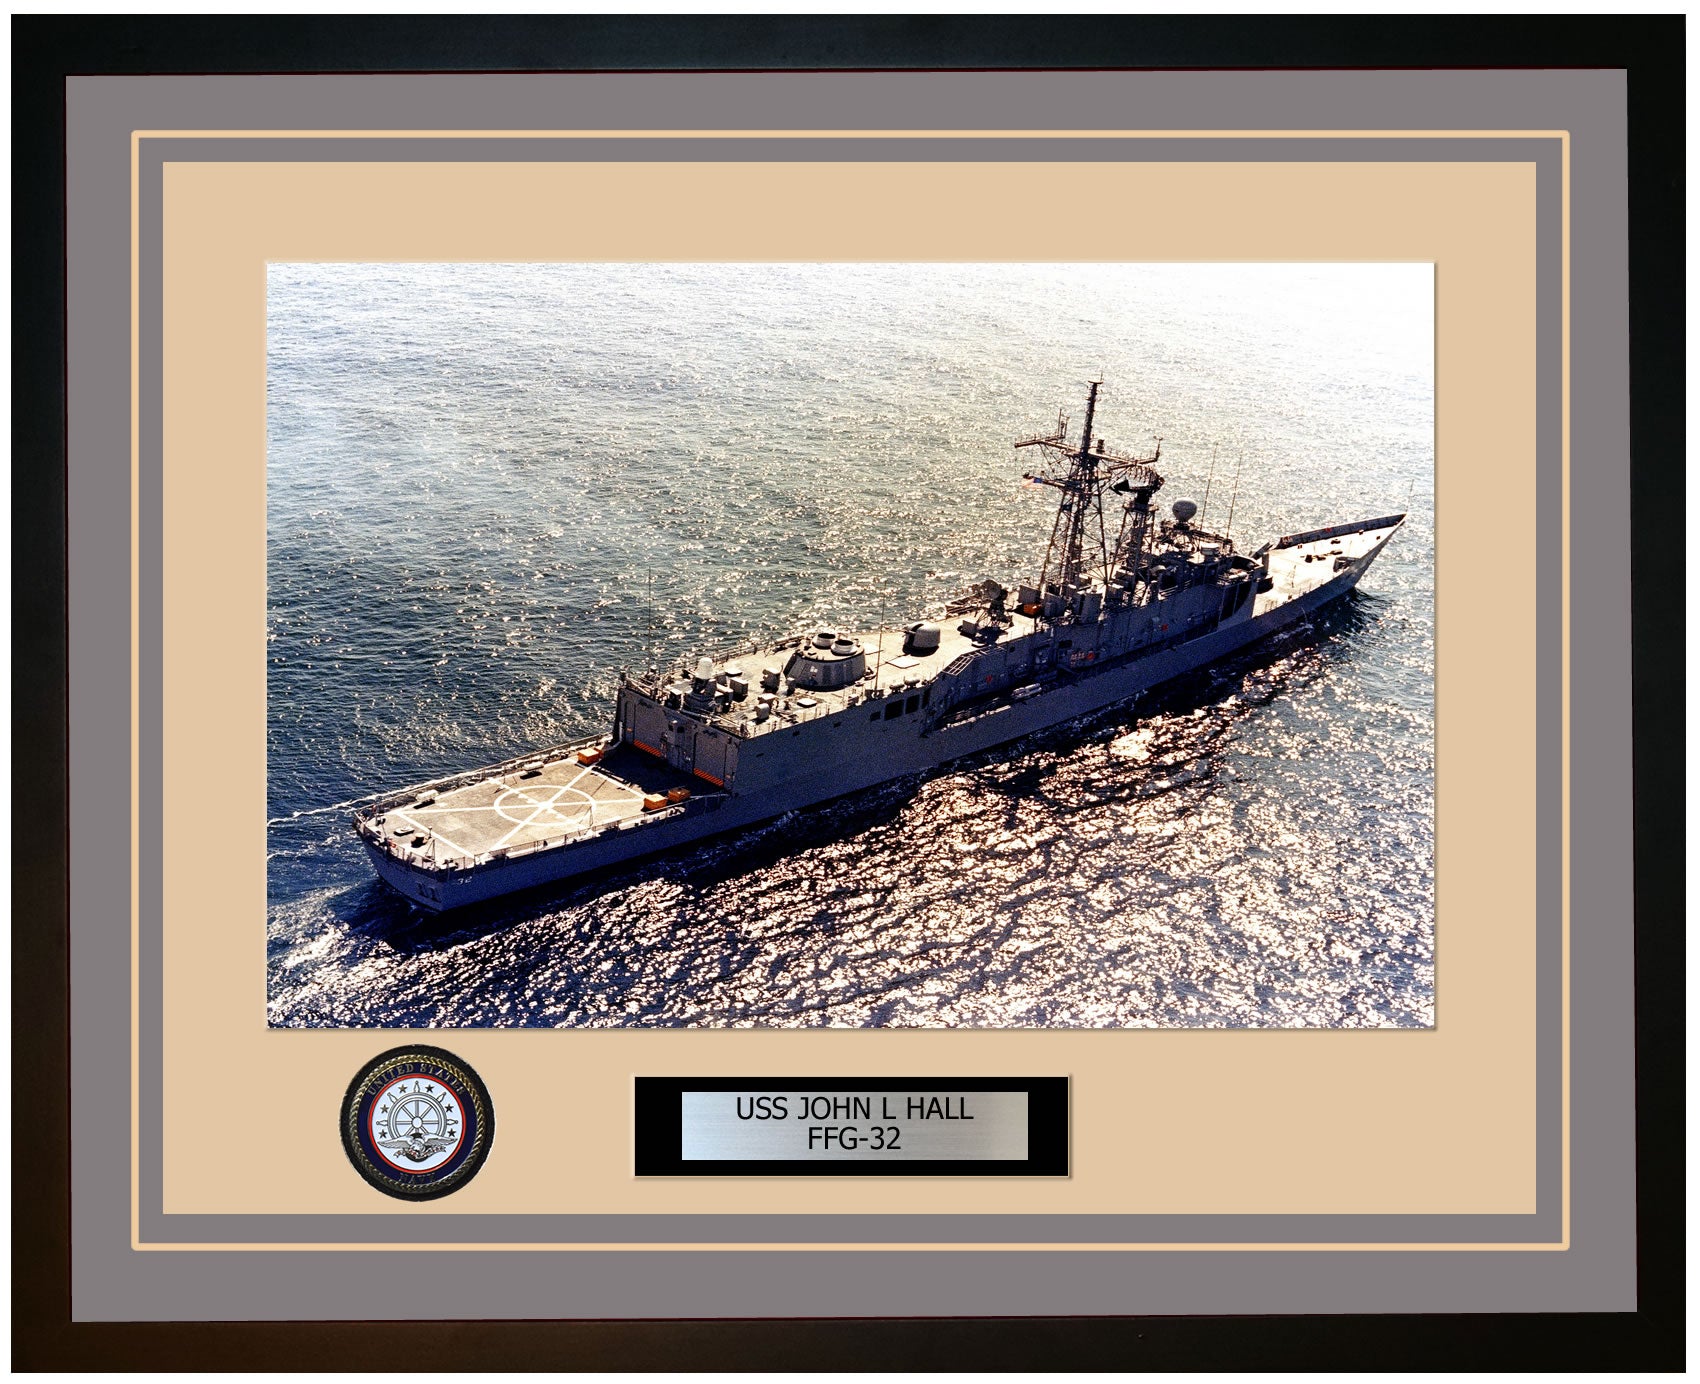 USS JOHN L HALL FFG-32 Framed Navy Ship Photo Grey